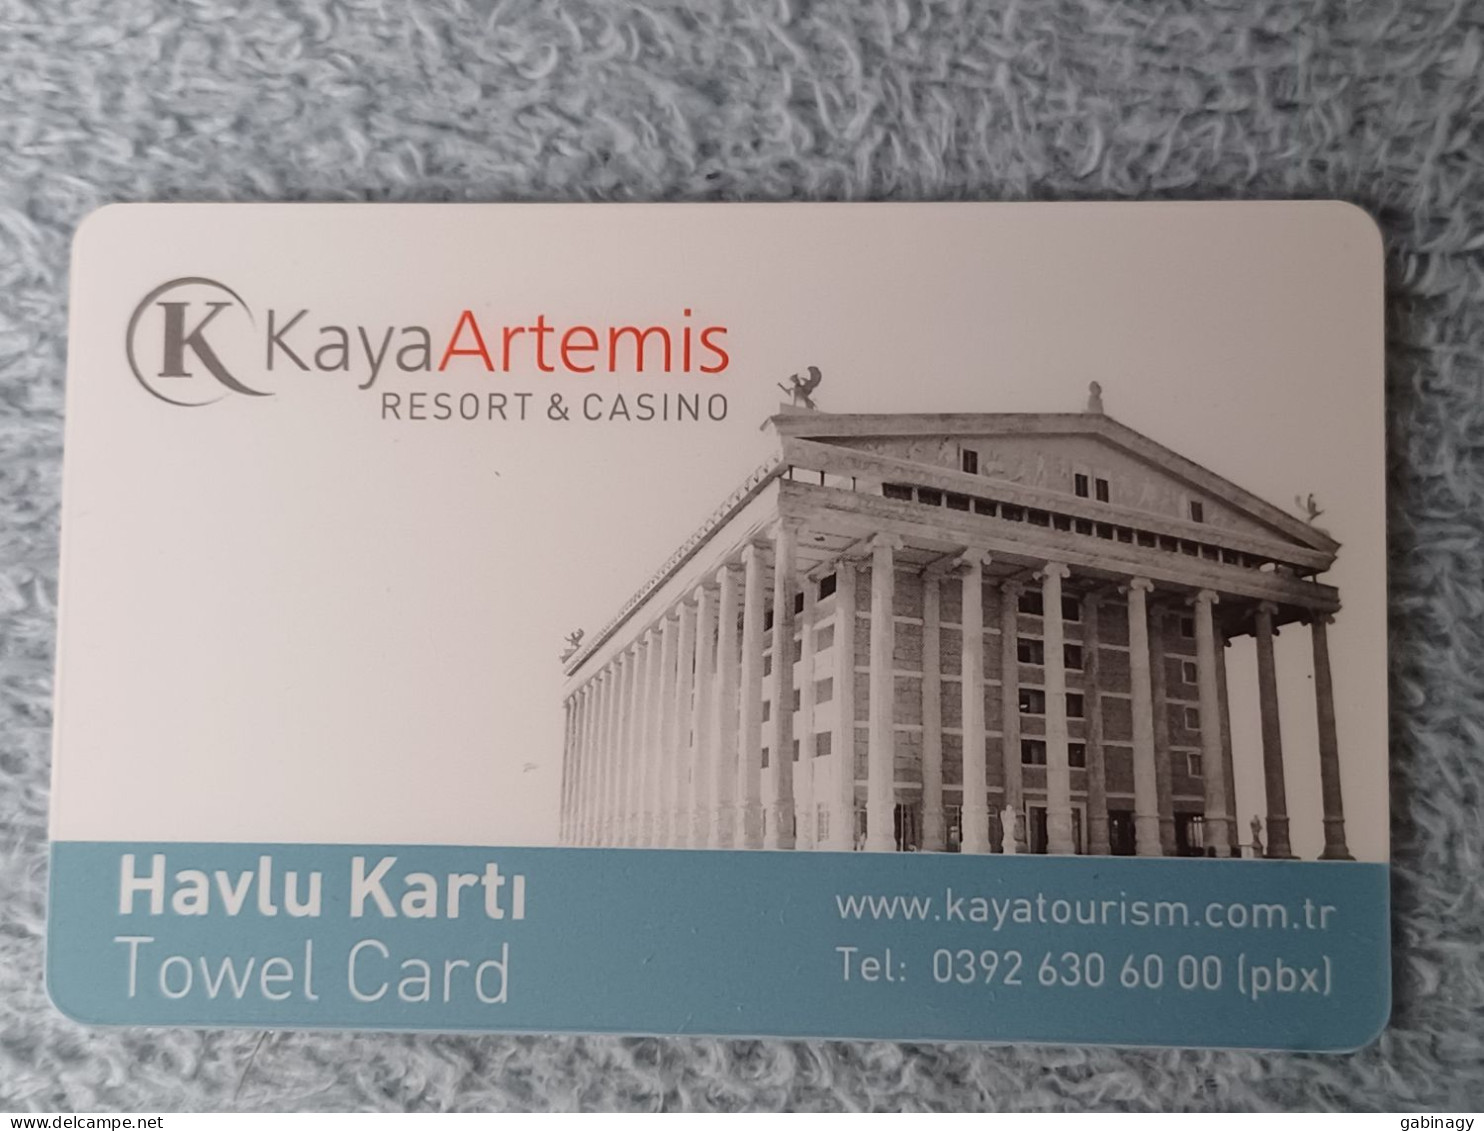 HOTEL KEYS - 2596 - TURKEY - KAYA ARTEMIS RESORT & CASINO - Hotel Keycards